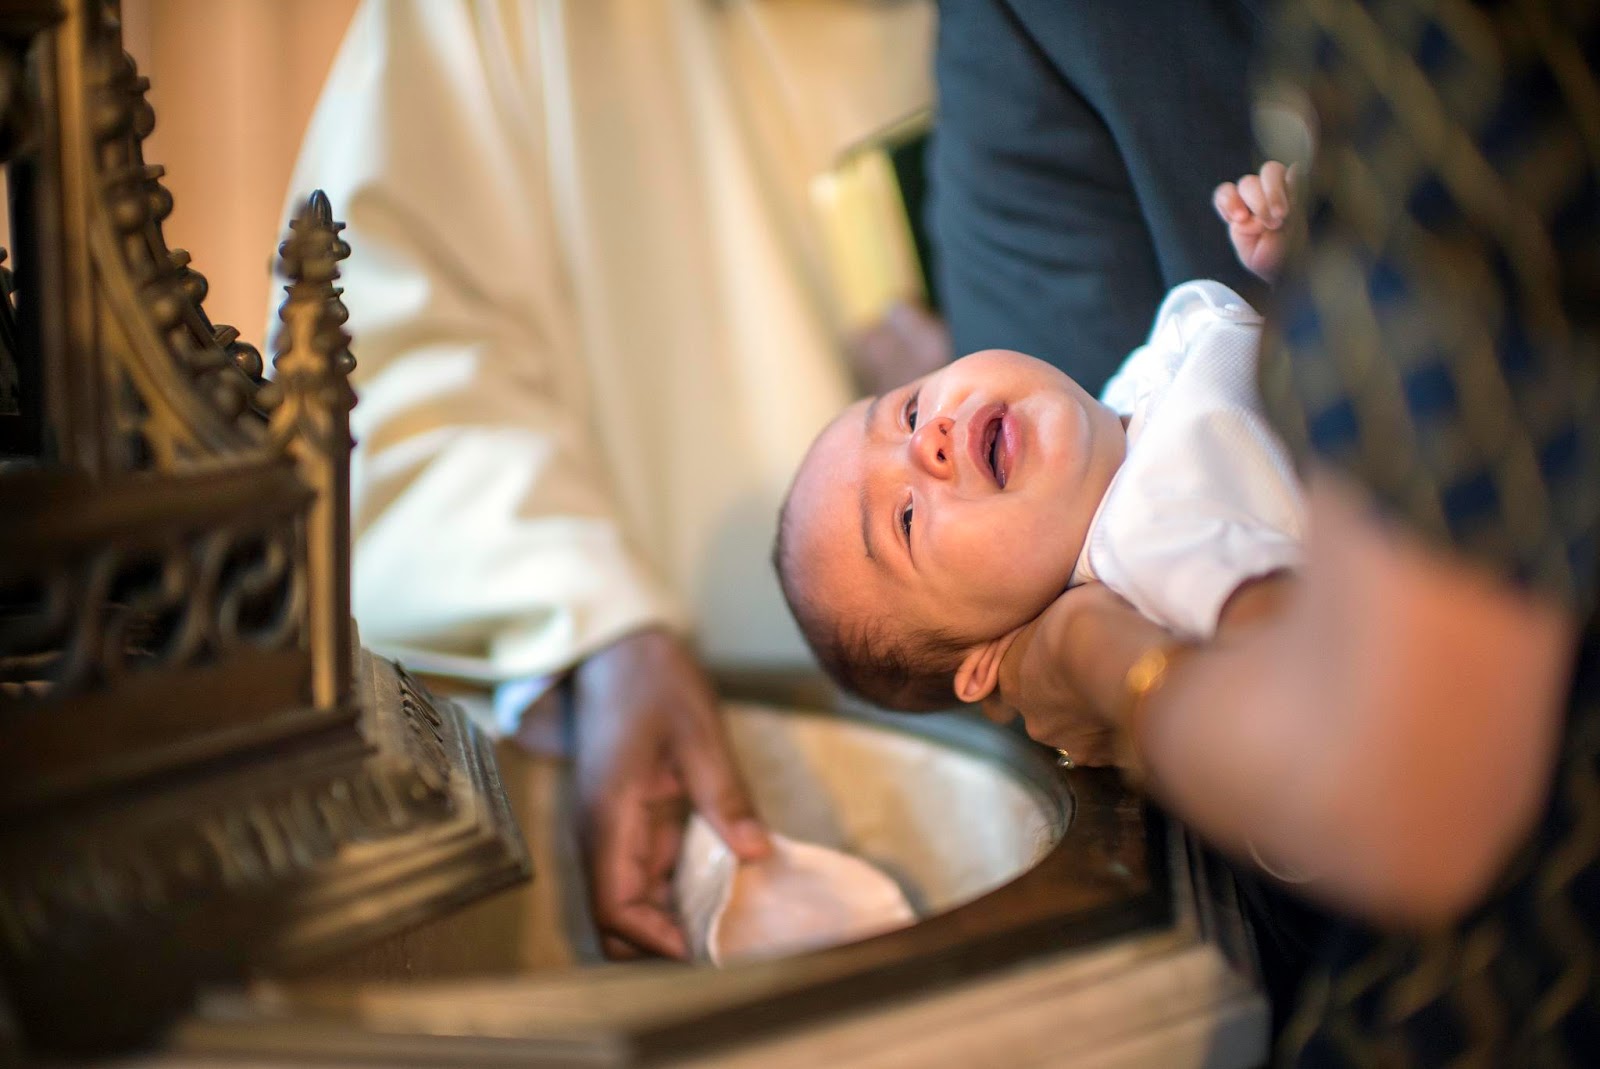 Infant Baptism is False Doctrine